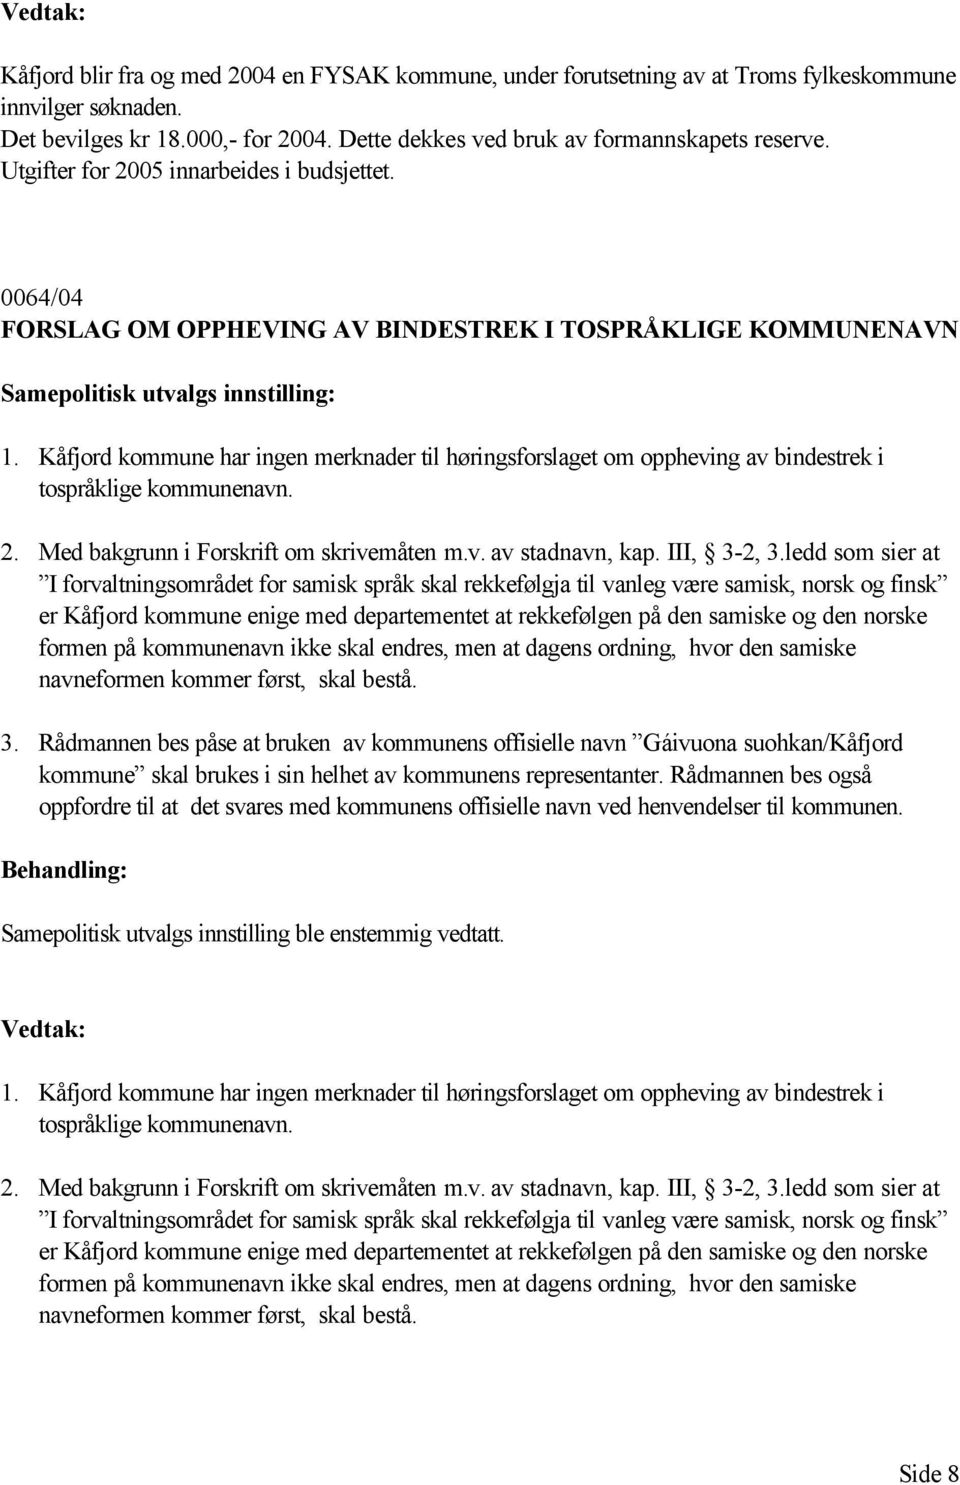 Kåfjord kommune har ingen merknader til høringsforslaget om oppheving av bindestrek i tospråklige kommunenavn. 2. Med bakgrunn i Forskrift om skrivemåten m.v. av stadnavn, kap. III, 3-2, 3.